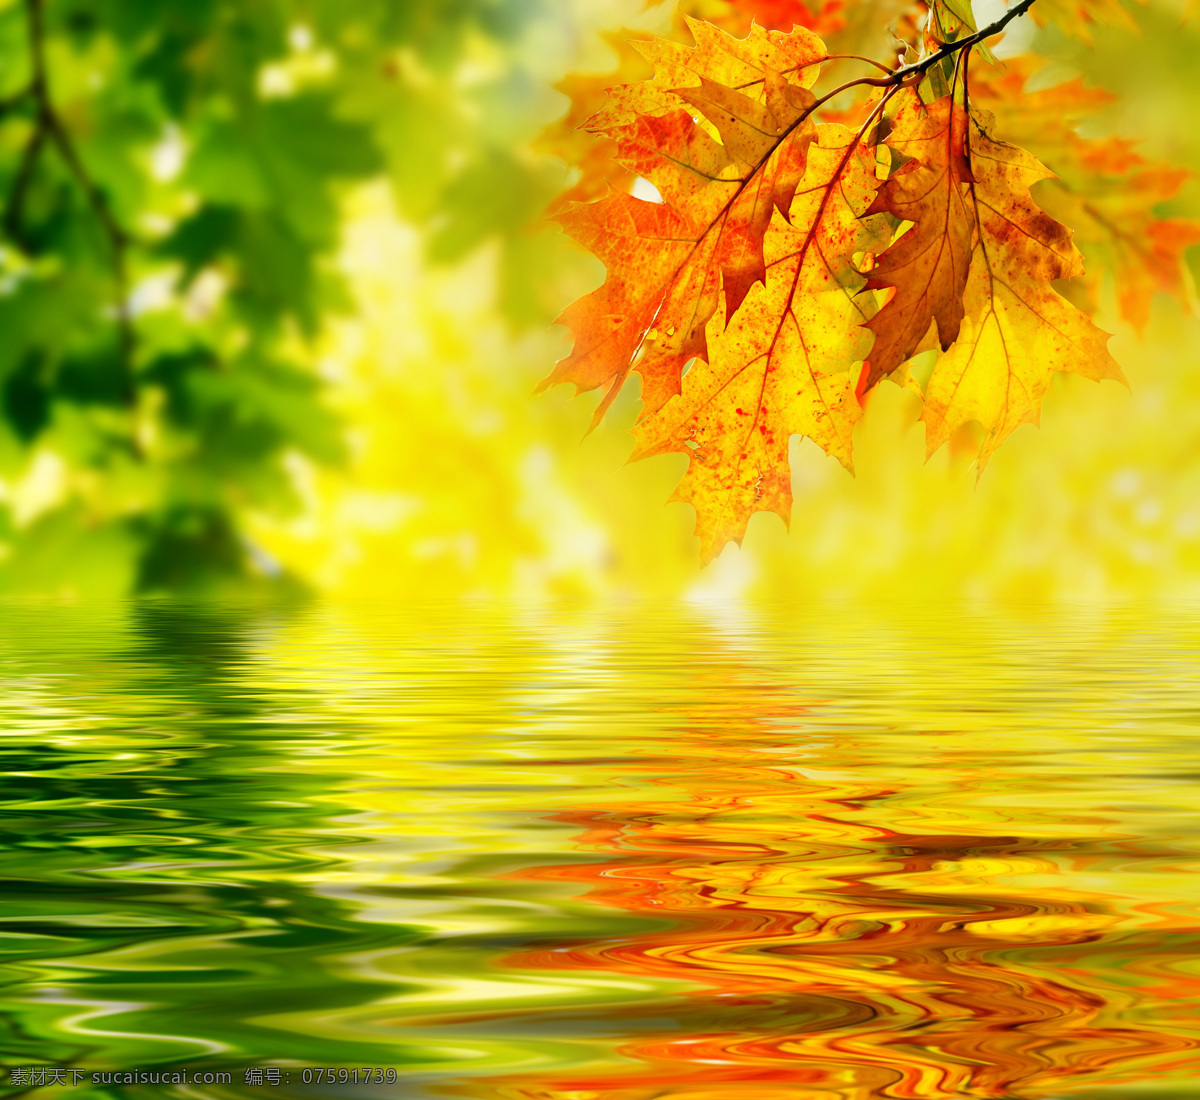 秋天枫叶美景 秋天风景 美丽风景 树叶 枫叶 黄叶 树木 枫树 树林 阳光 湖水 倒影 自然风景 自然景观 黄色